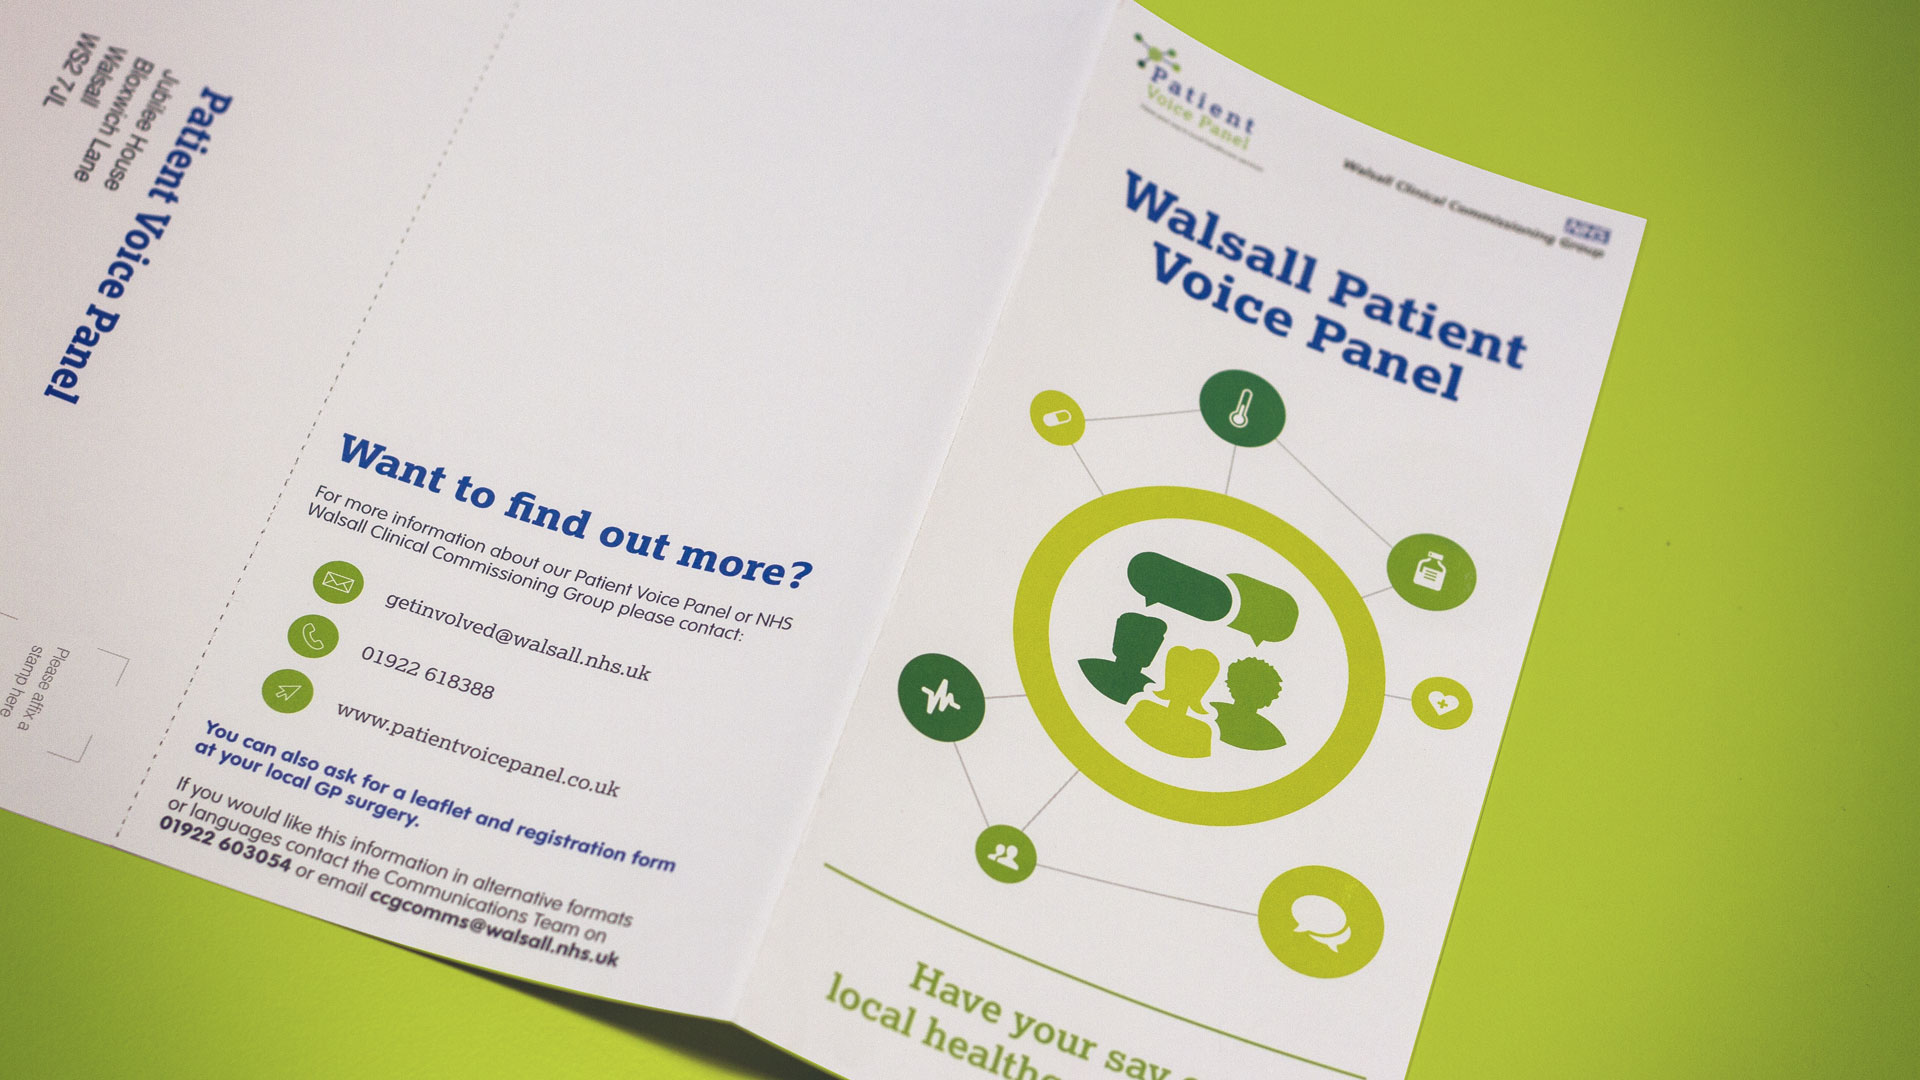 Patient Voice Panel Leaflet